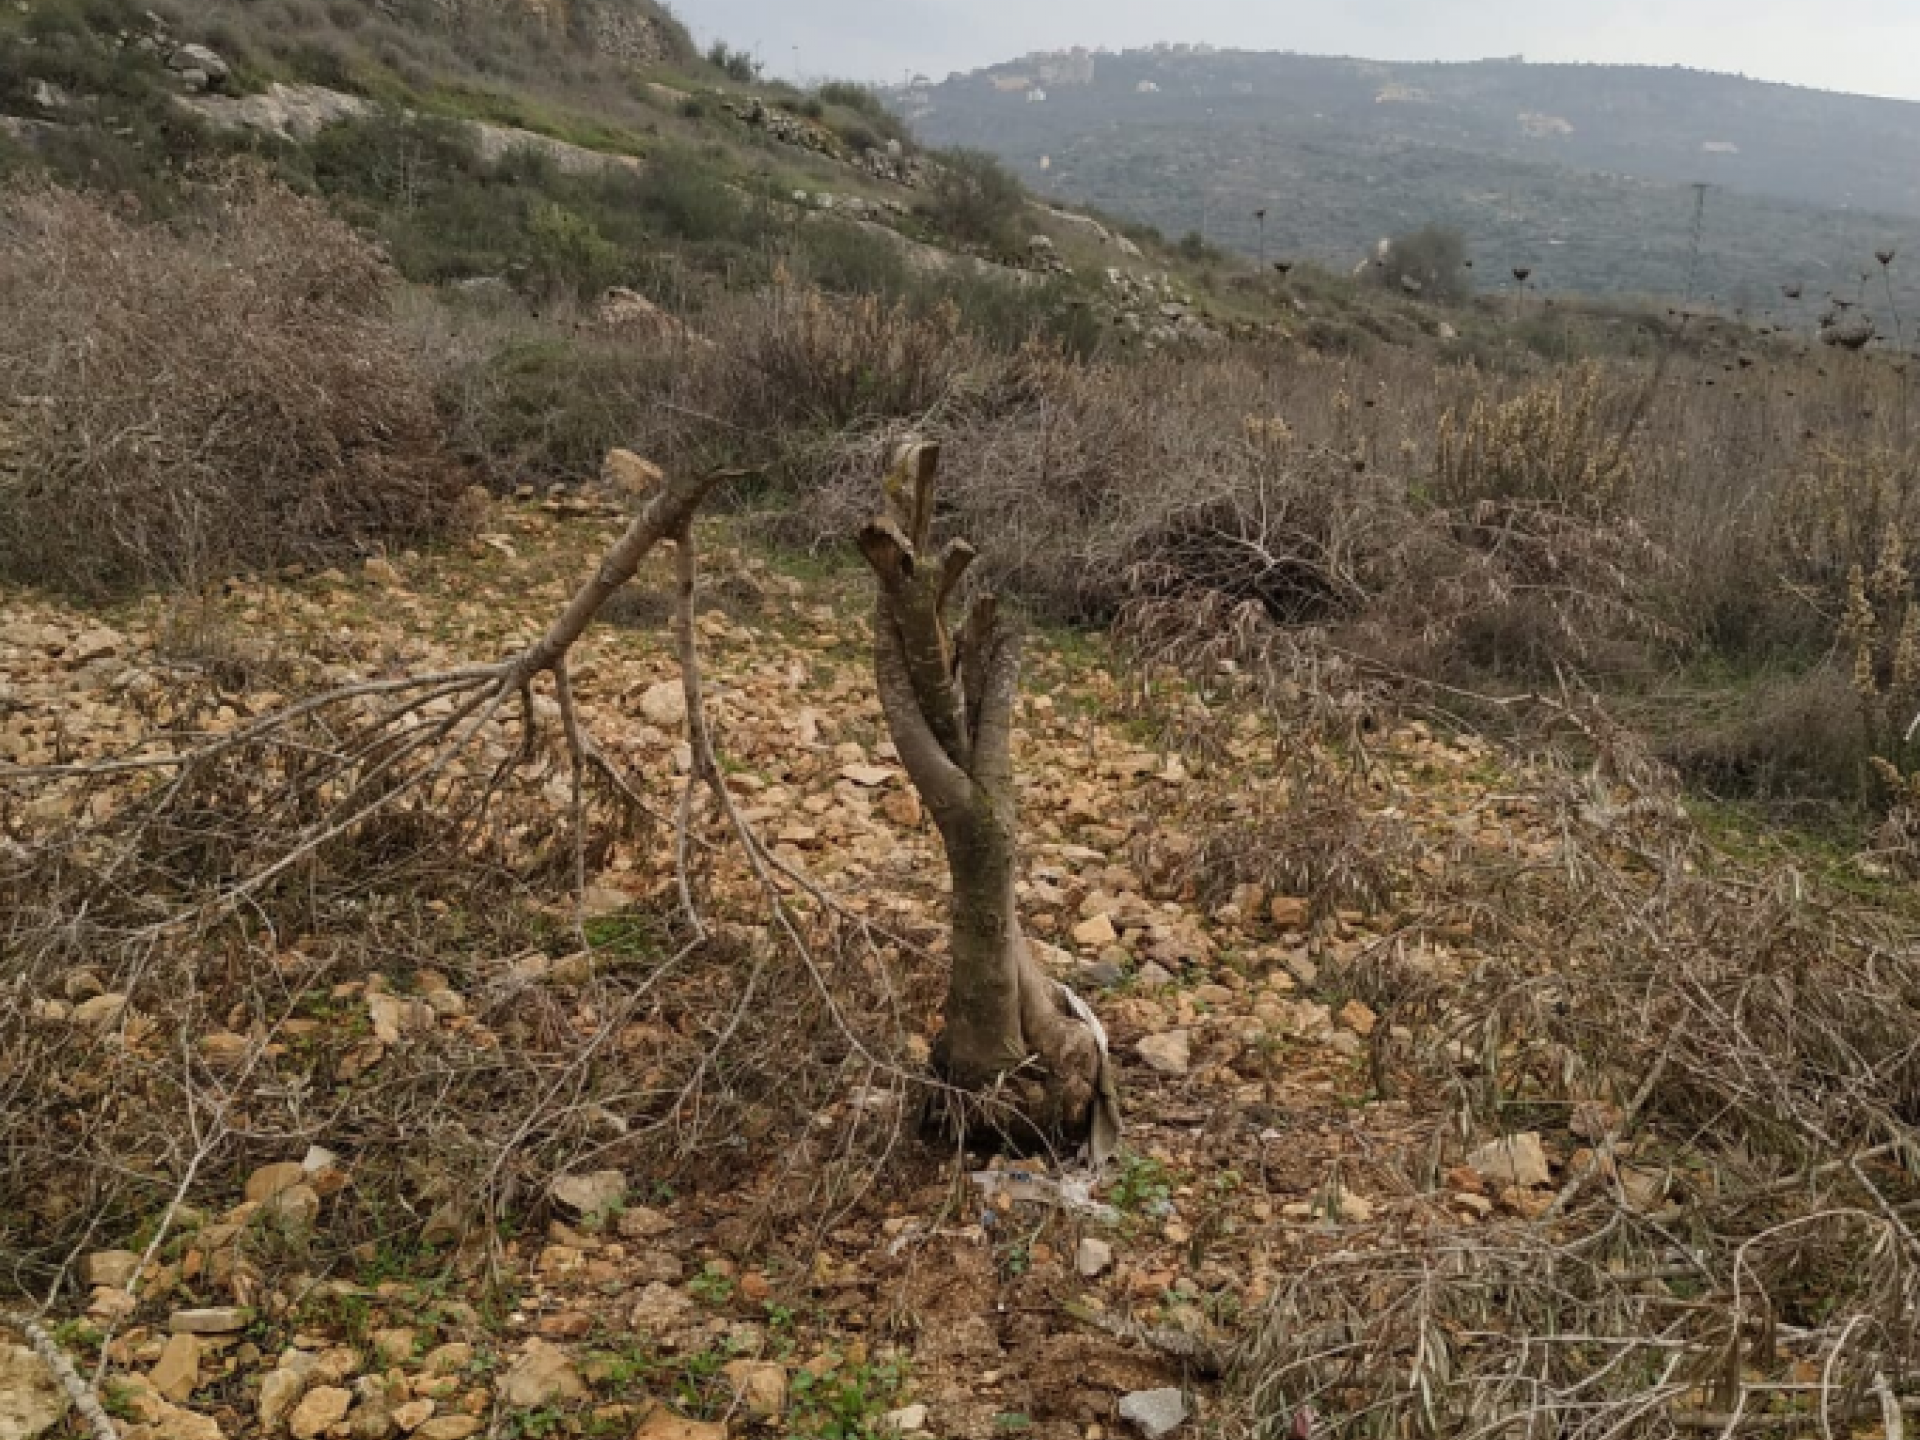 38 עצי זית נכרתו בלילה בכפר יאסוף, בחלקה שקרובה להתנחלות רחלים. בצילומים אפשר לראות באיזו נחישות וואכזריות נעשה מעשה הנבלה הזה